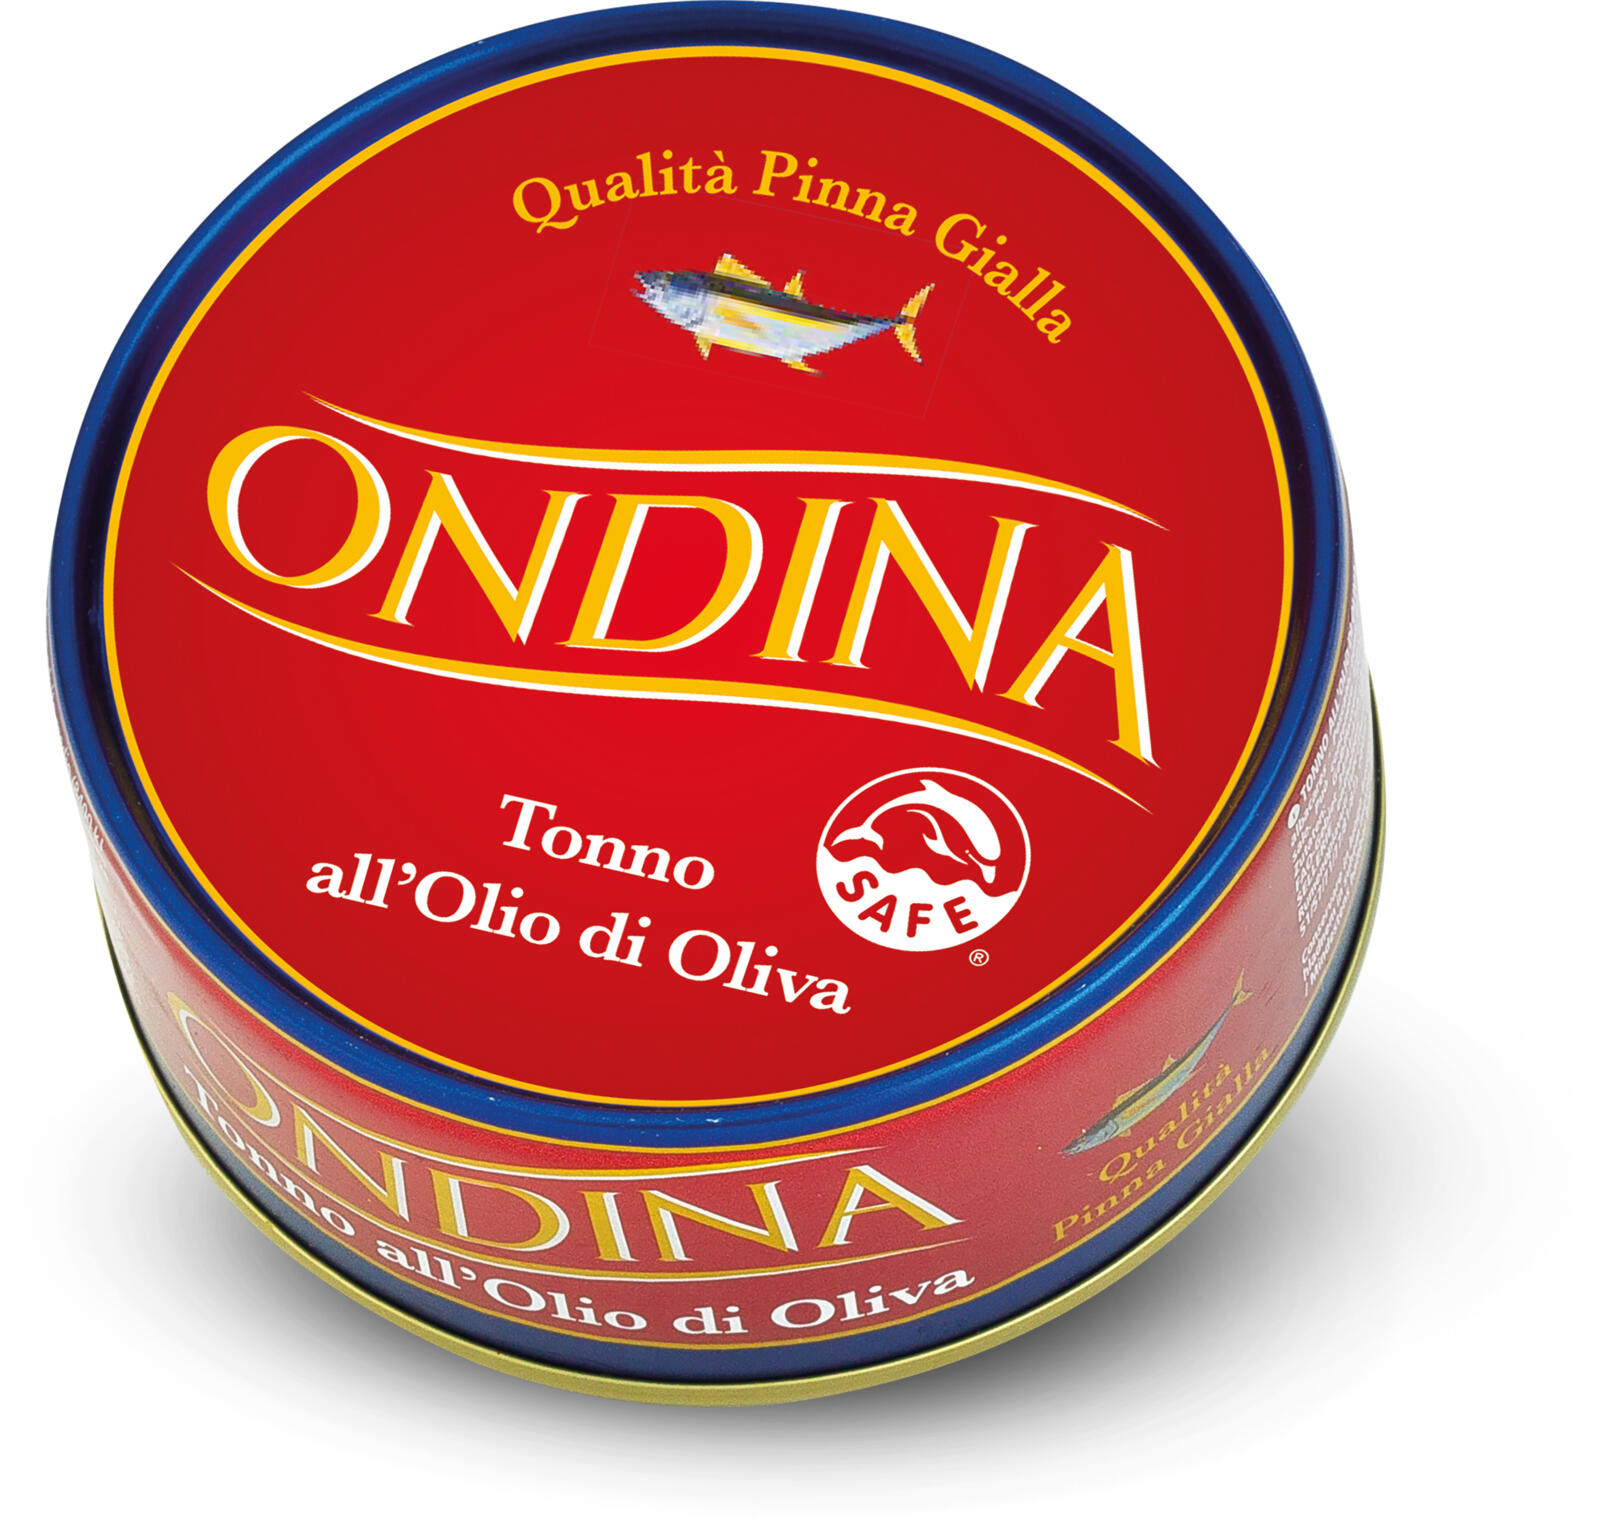 Тунец в оливковом масле. Ondina тунец. Тунец в масле. Итальянский тунец консерва купить.